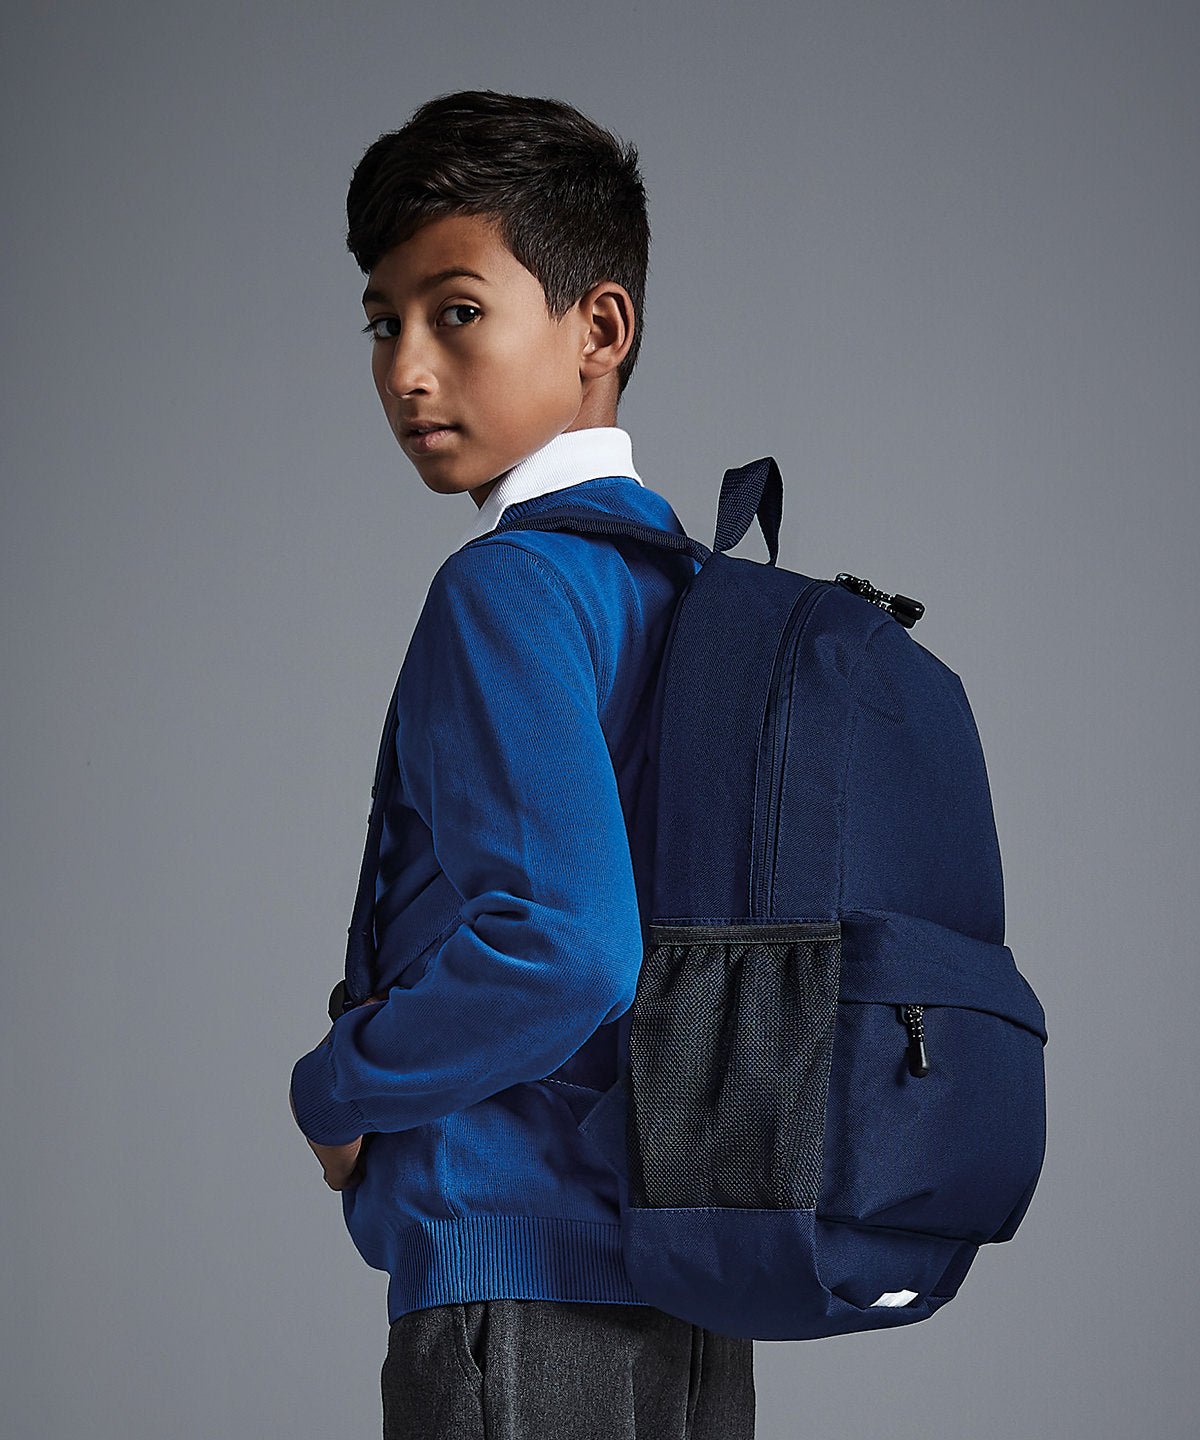 Töskur - Academy Backpack